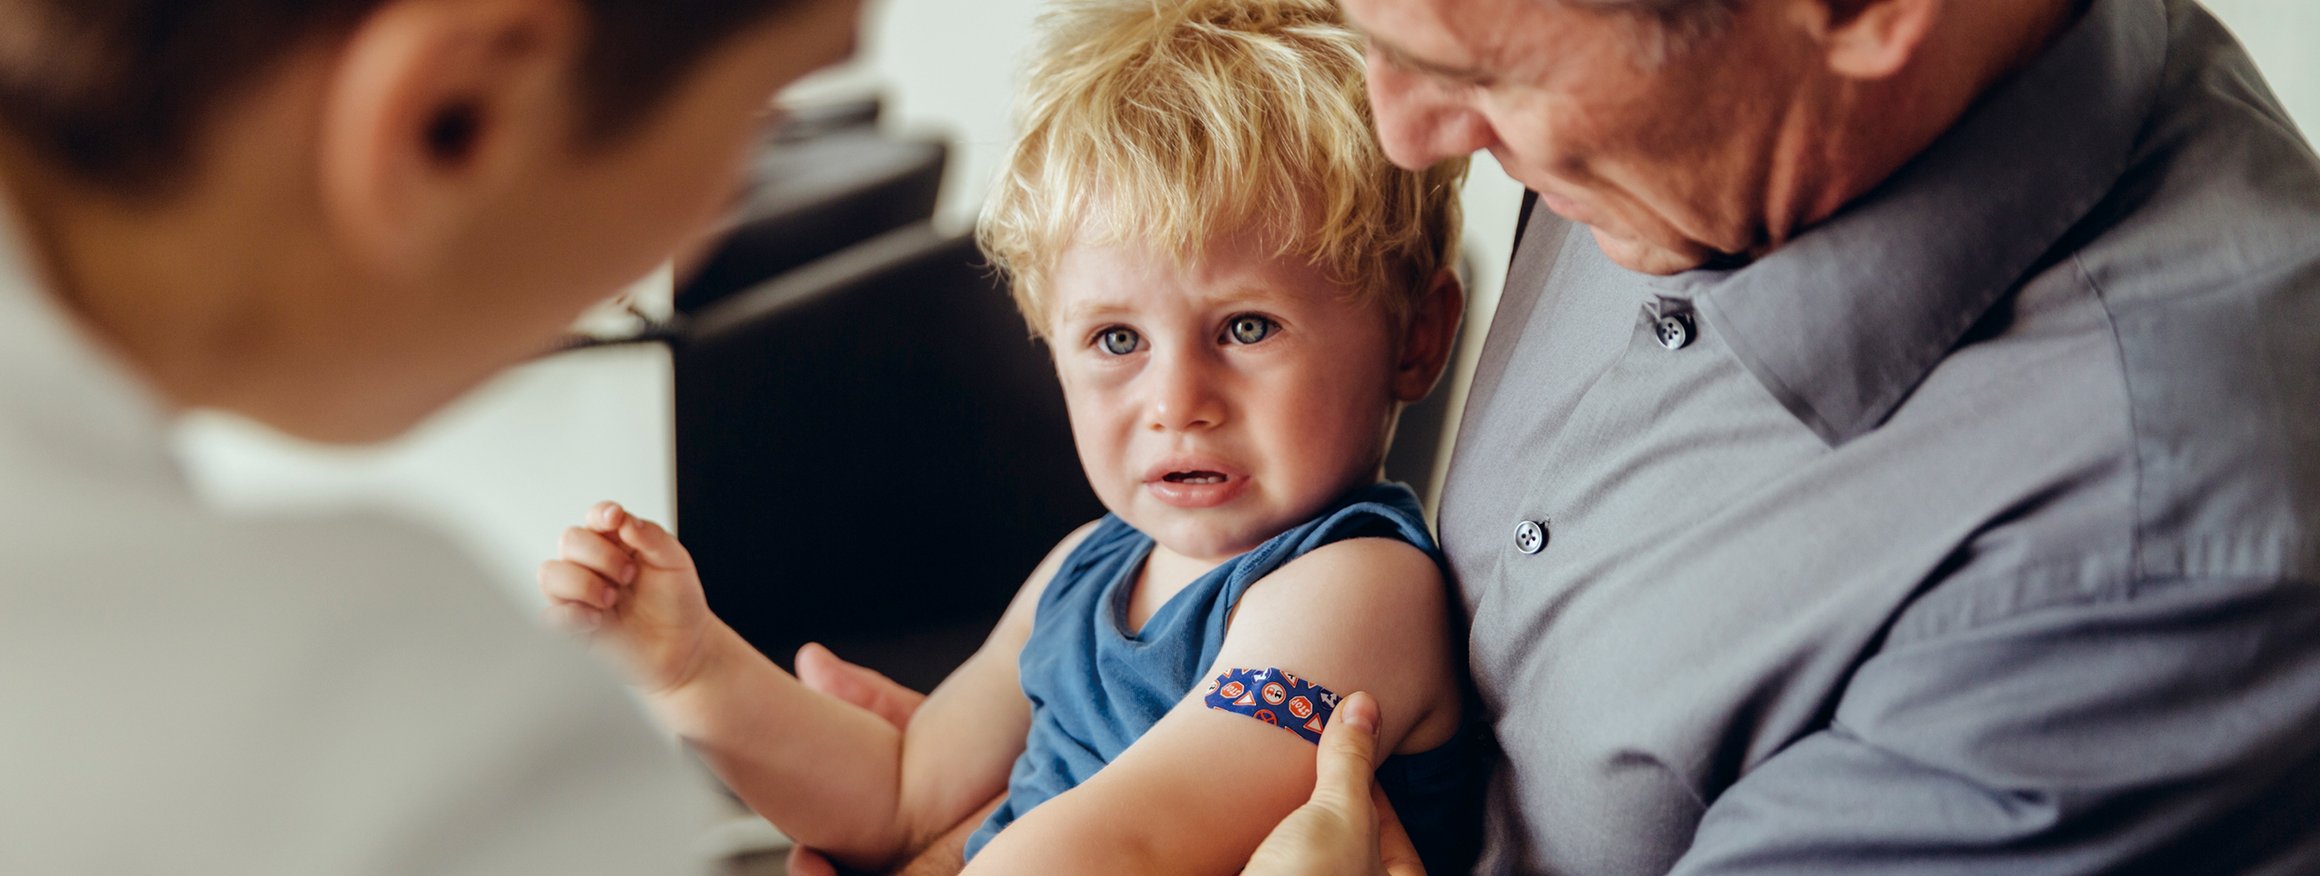 Ein Kind sitzt weinend auf dem Schoss des Vaters, während der Arzt in weißem Kittel dem Kind ein buntes Pflaster nach einer Impfung auf den Arm klebt